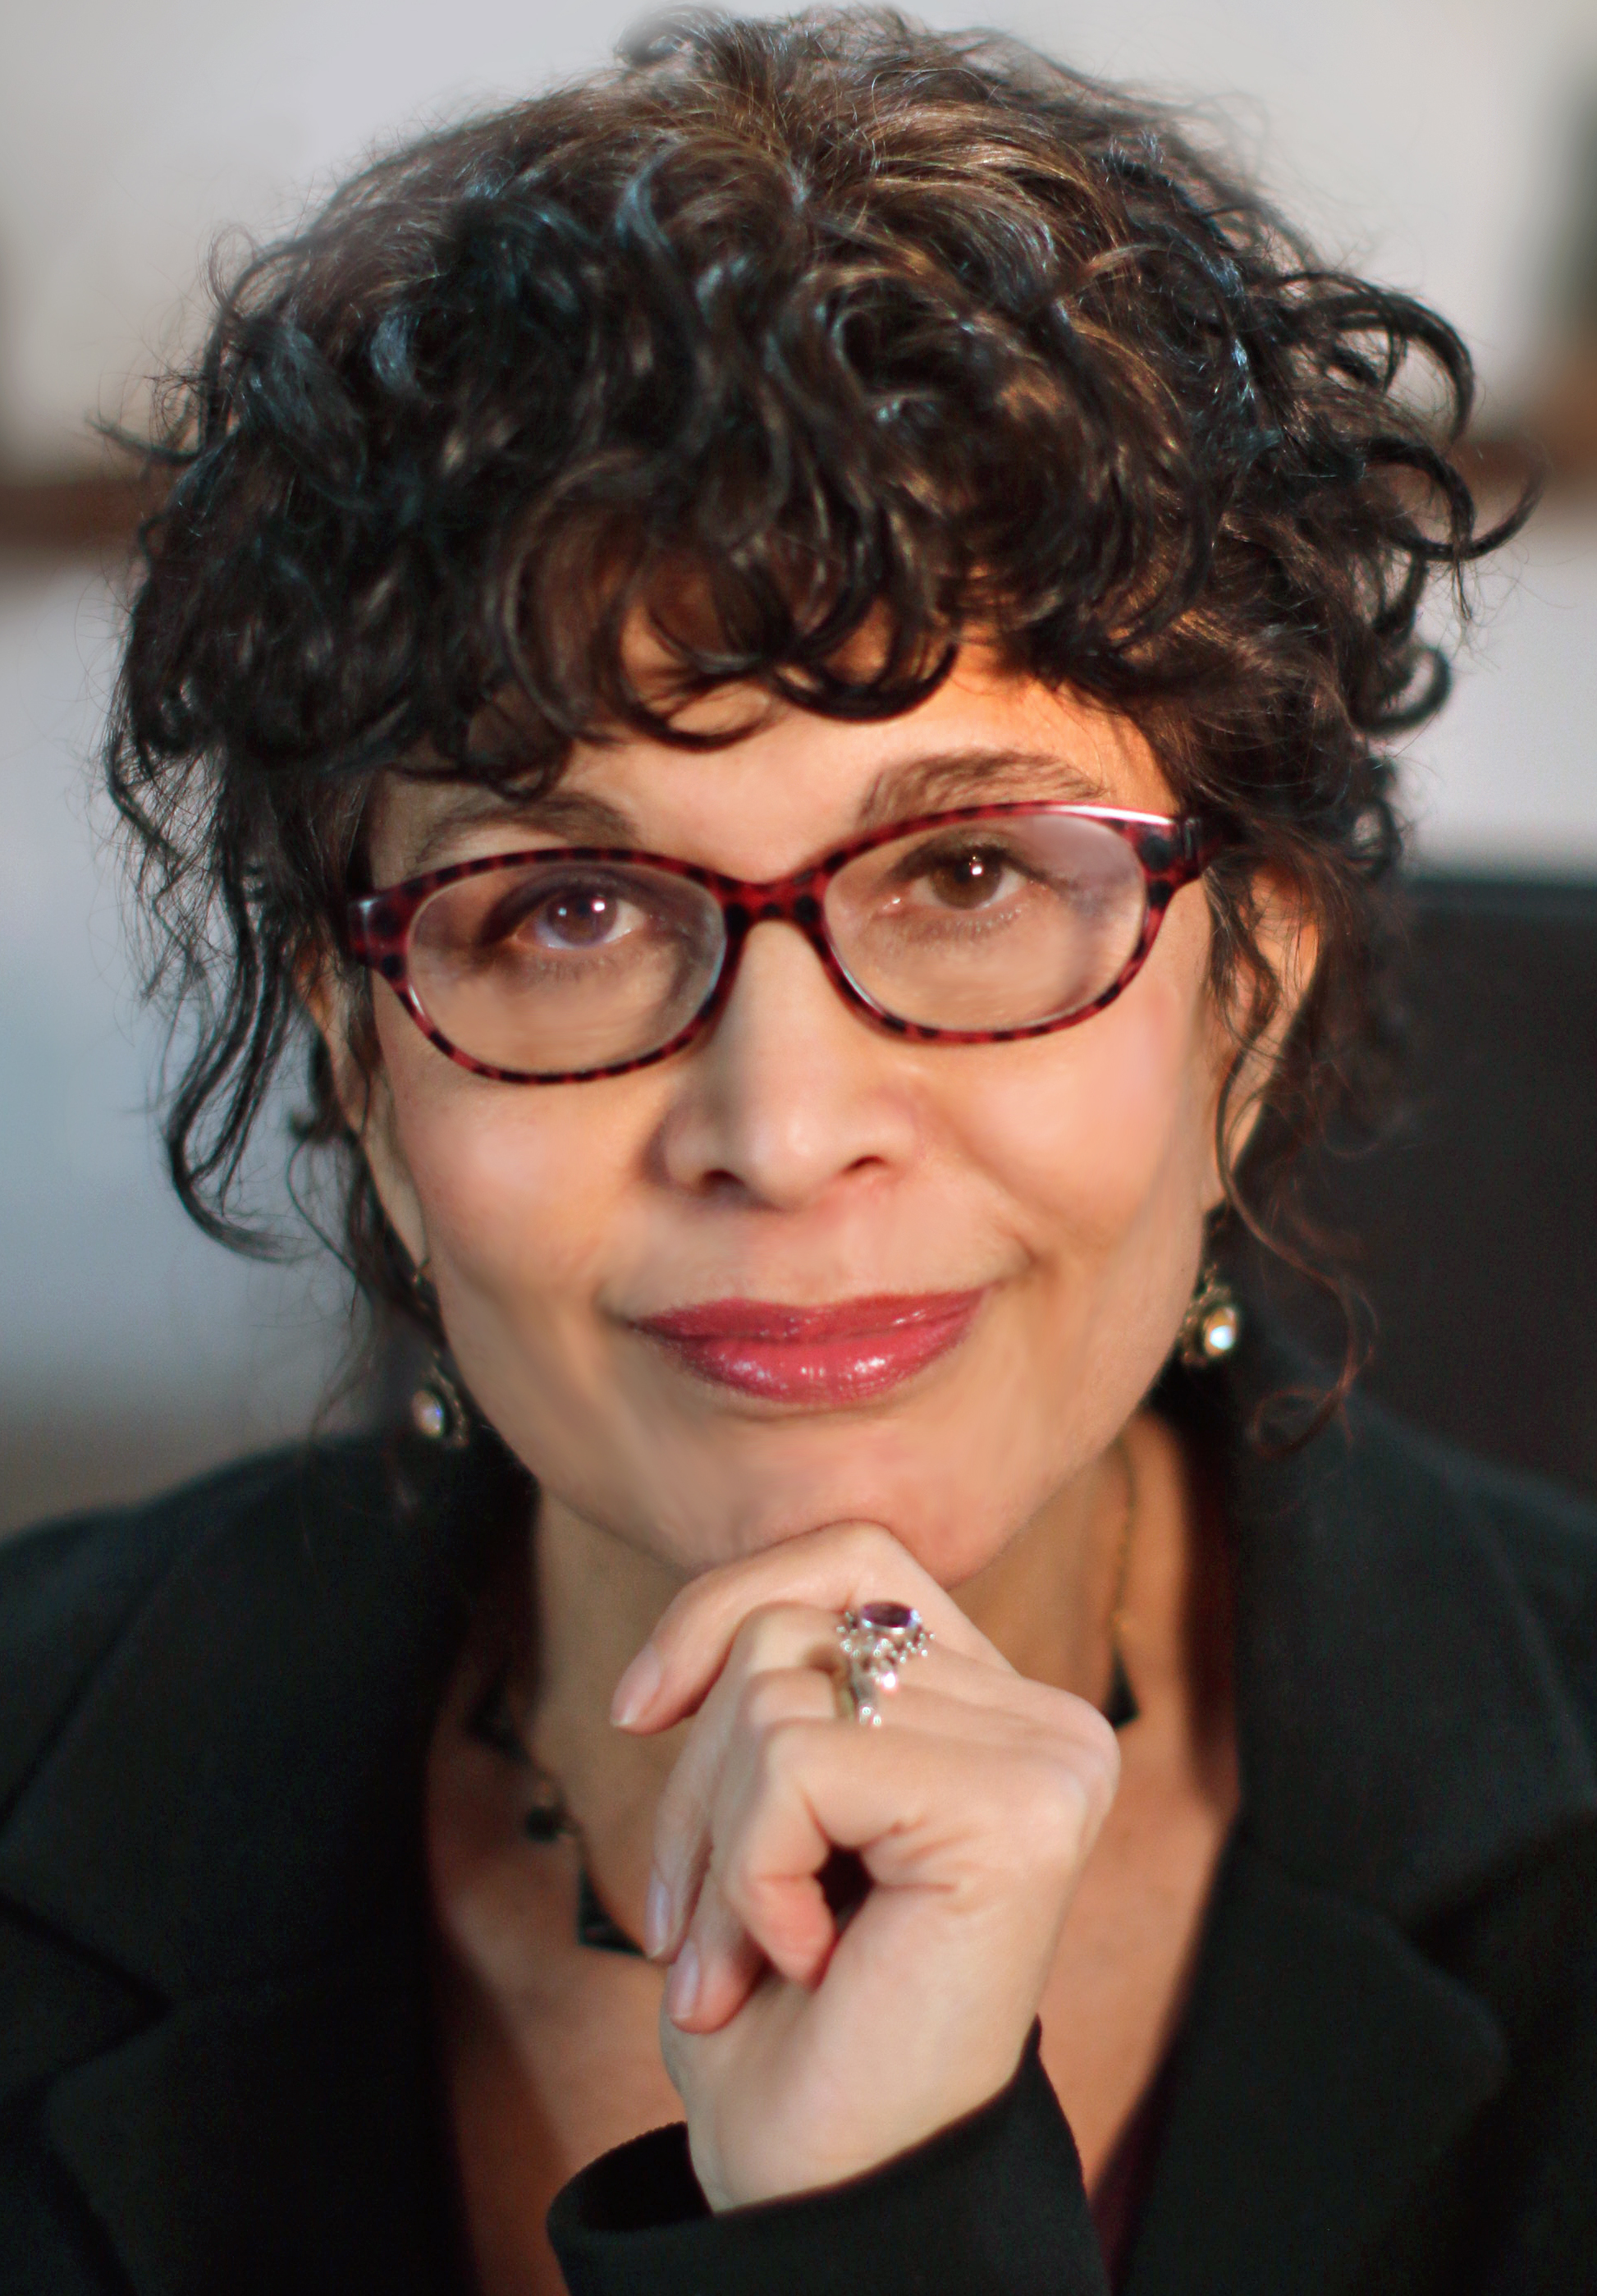 Dr. Lidia Abrams